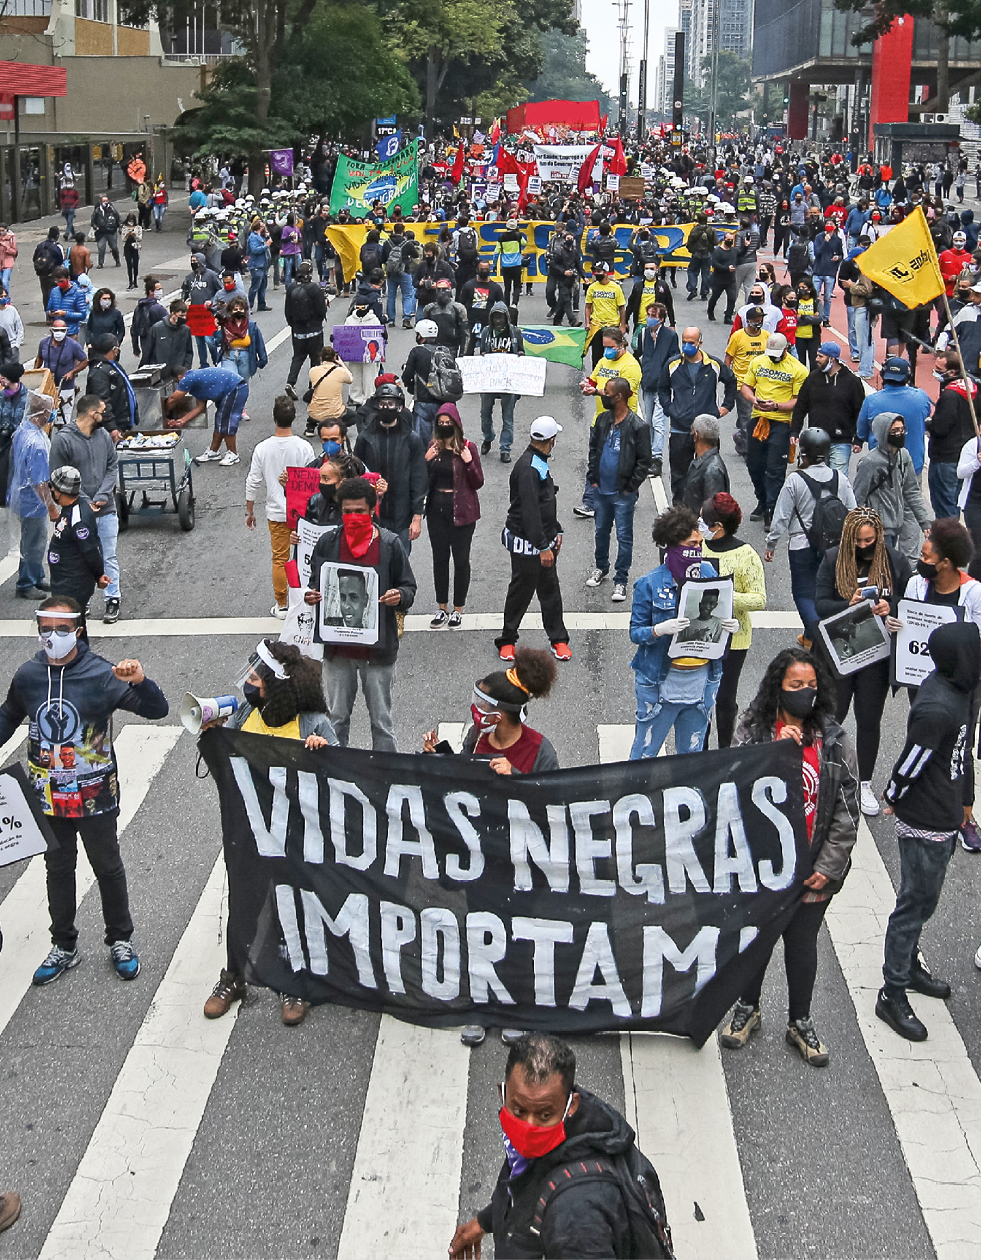 Fotografia. Multidão reunida em manifestação em uma grande avenida. Muitas pessoas utilizam máscara facial e seguram cartazes. Em uma faixa, em primeiro plano, lê-se: 'Vidas negras importam'.